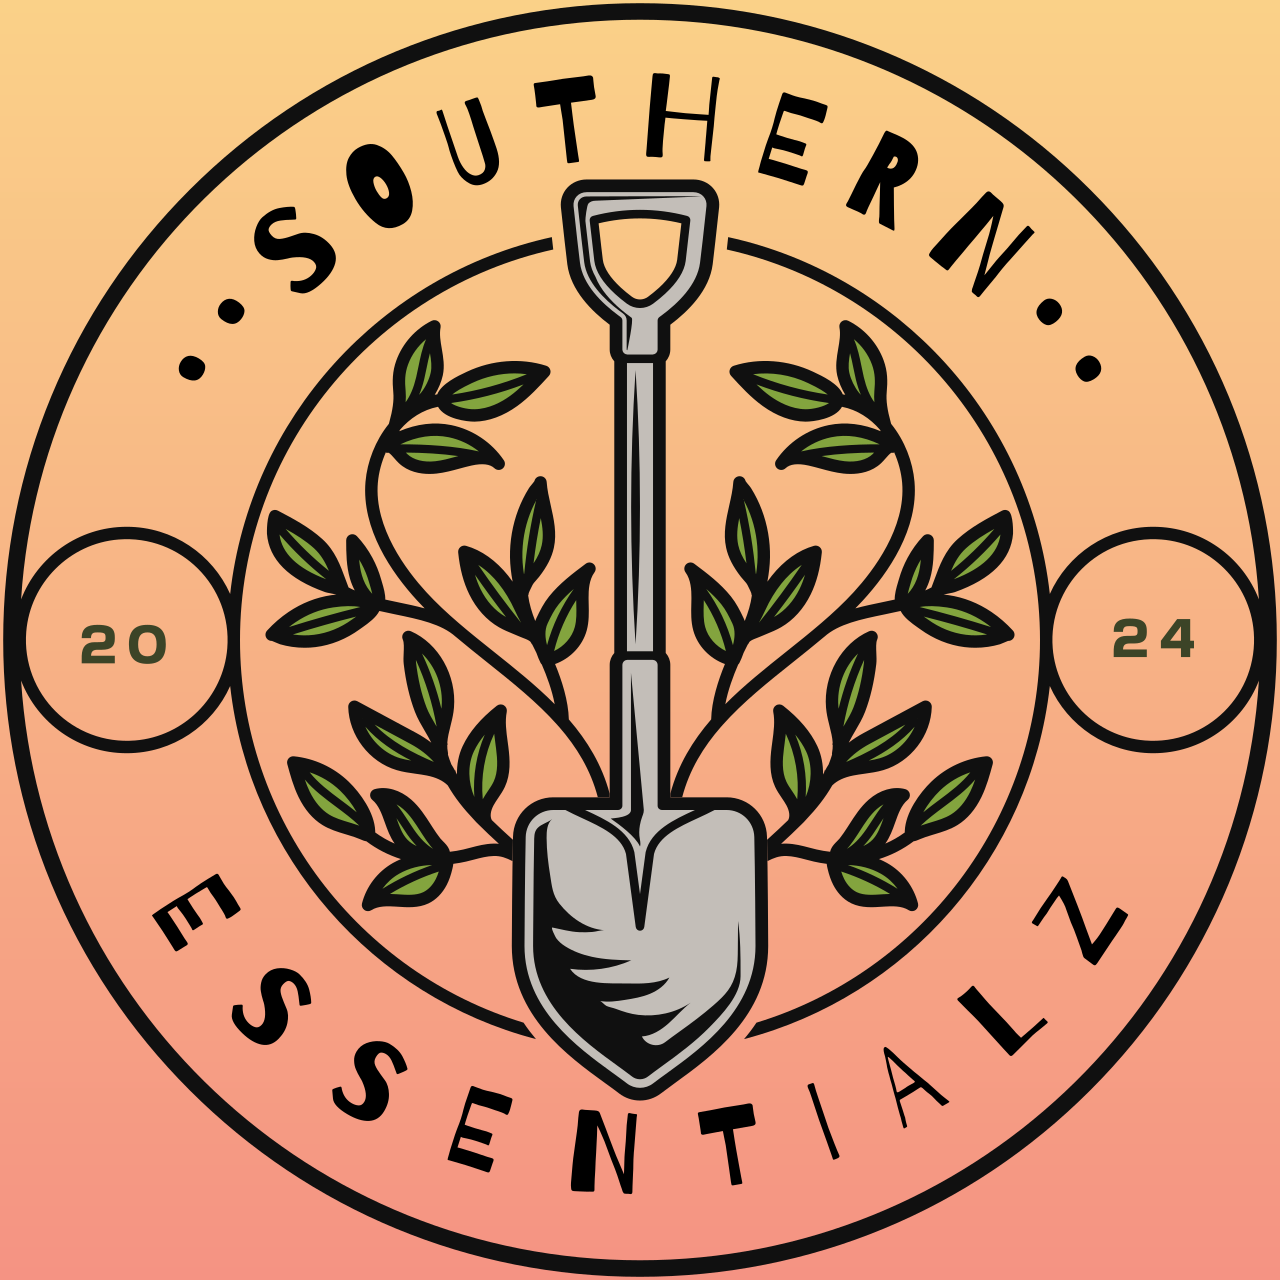 ••SOUTHERN••'s logo